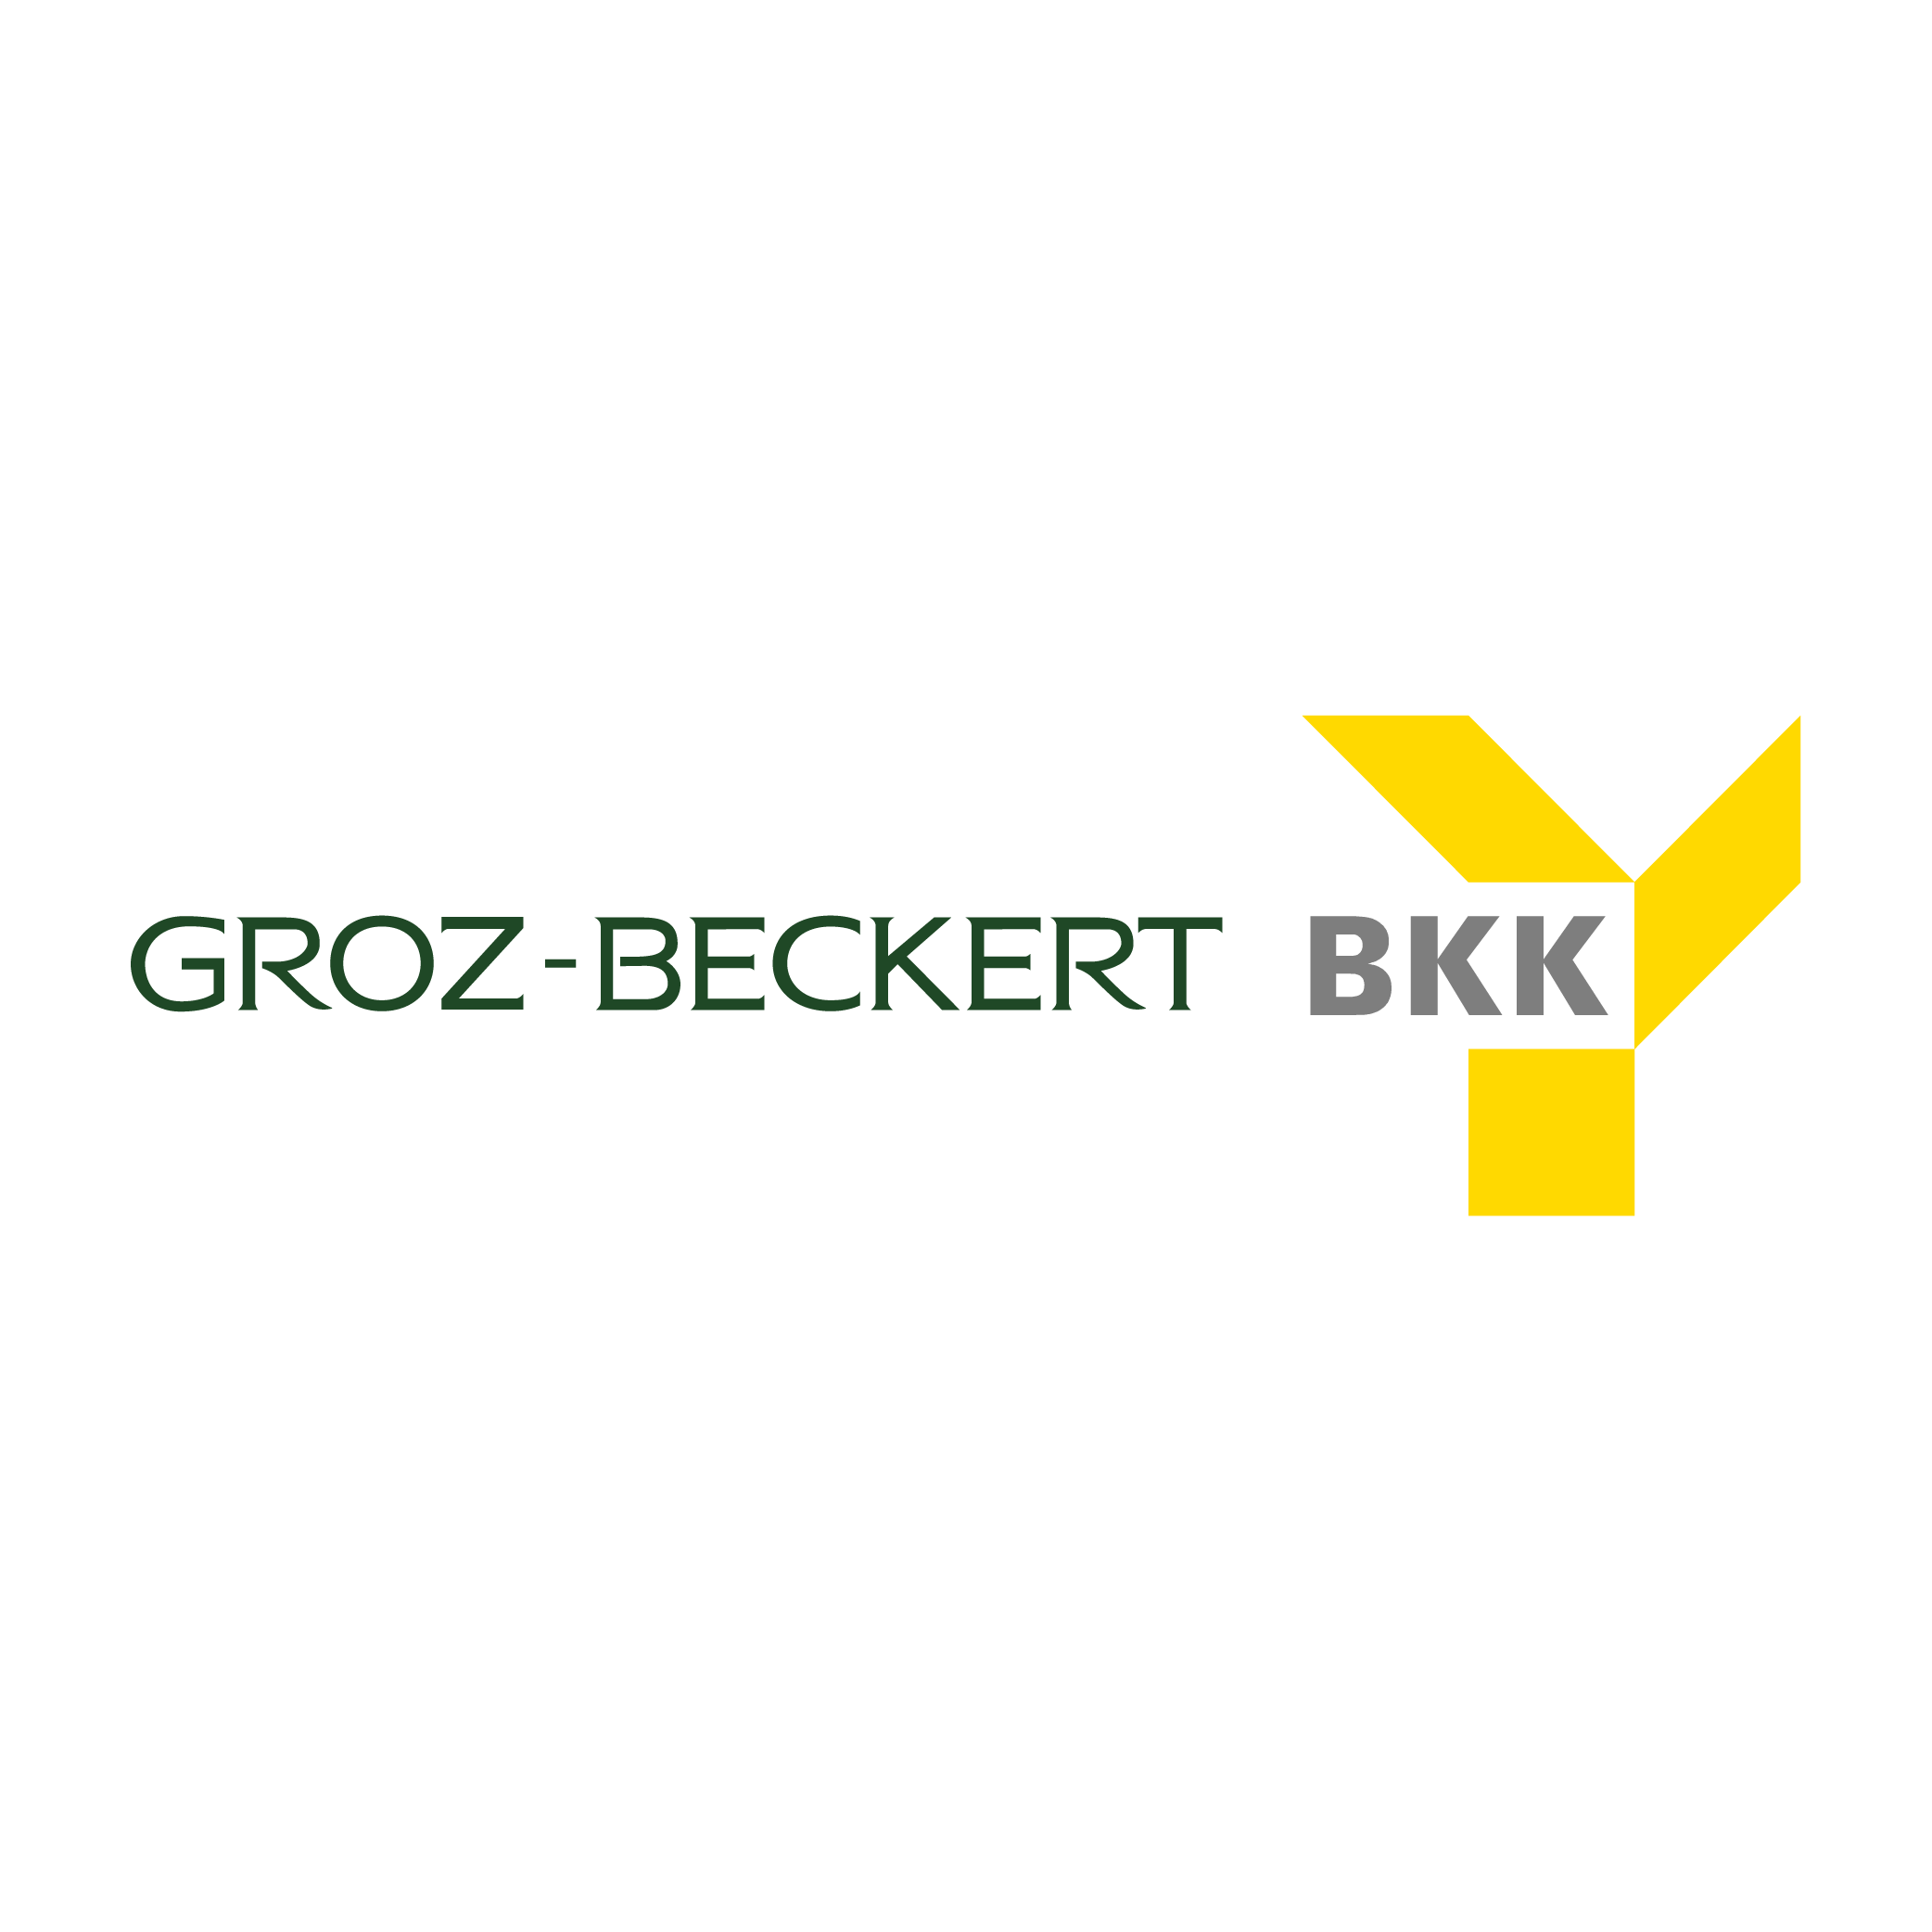 Markenzeichen der BKK Groz-Beckert